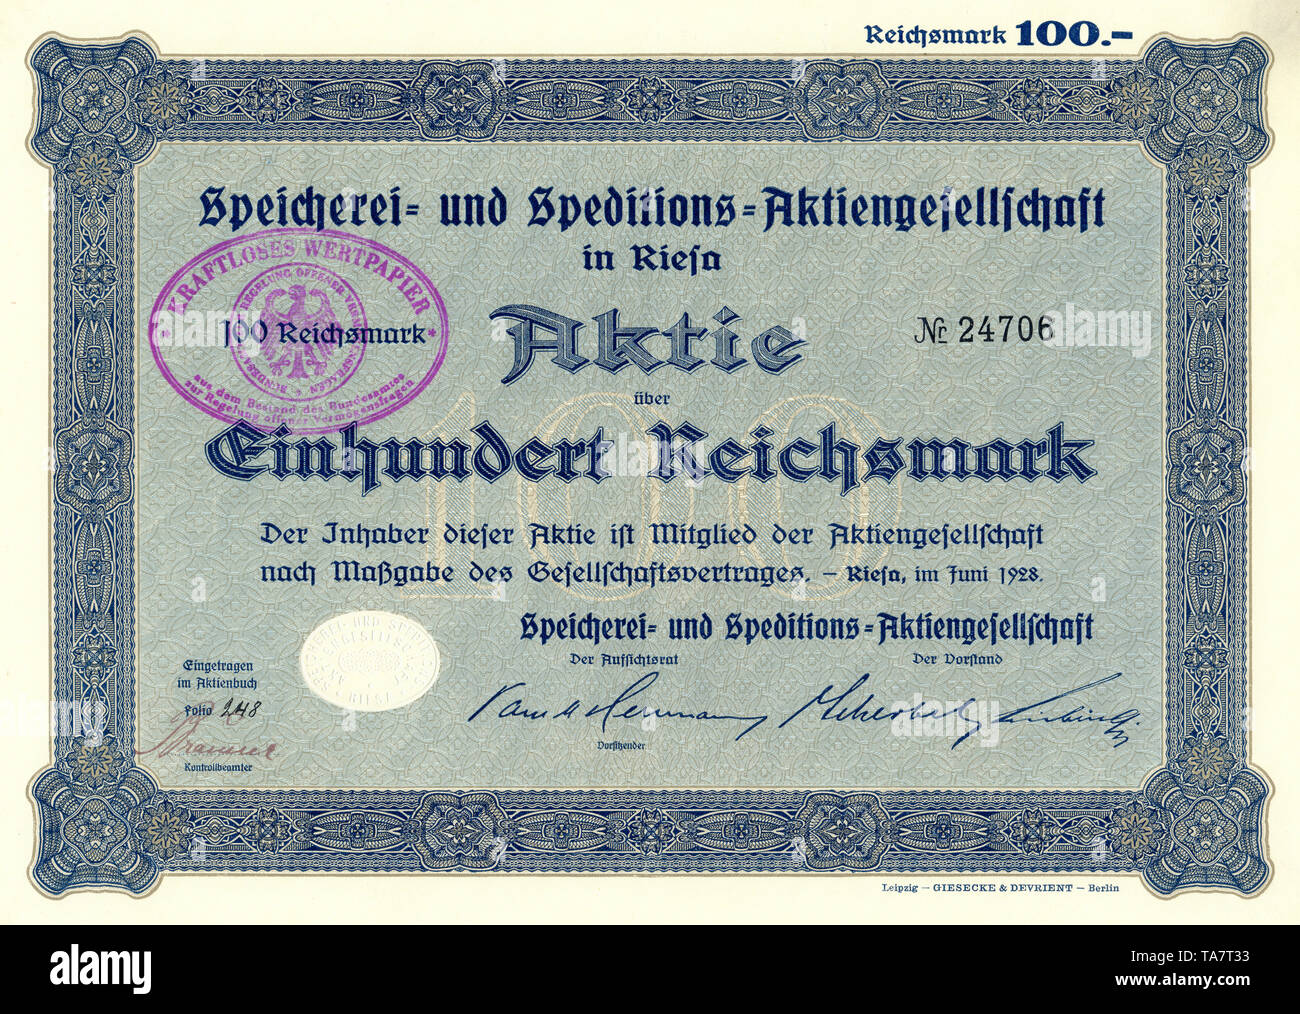 Historic stock certificate, Reichsmarks obligation, Germany, Historische Aktie über 100 Reichsmark, Speicherei- und Speditions-Aktiengesellschaft in Riesa, 1929, Deutschland, Europa Stock Photo